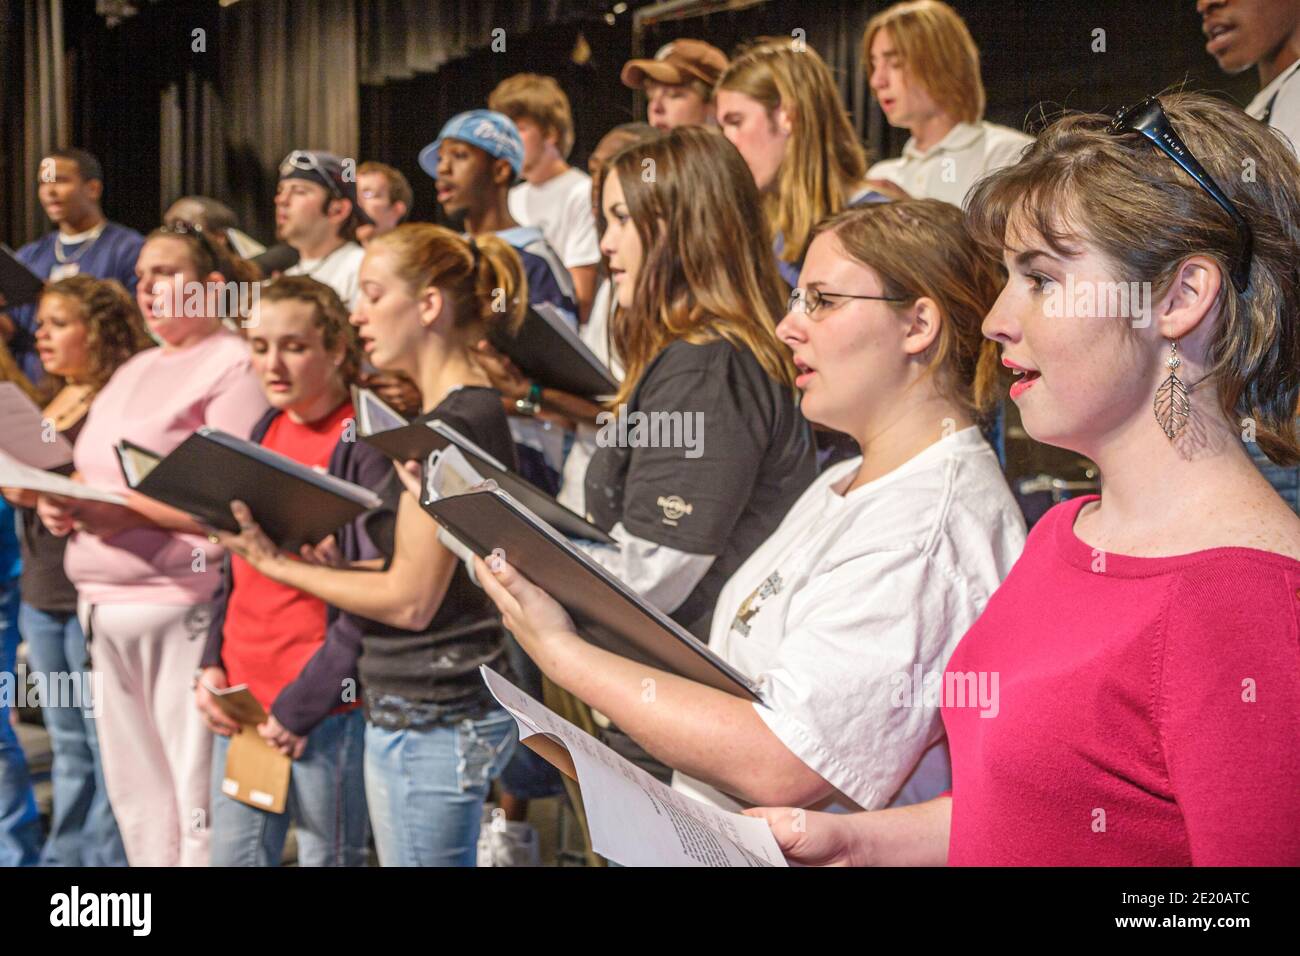 Alabama Monroeville Alabama Southern Community College Campus James Nettles Auditorium, Studenten Chor üben Probe singen Frauen weiblich Stockfoto